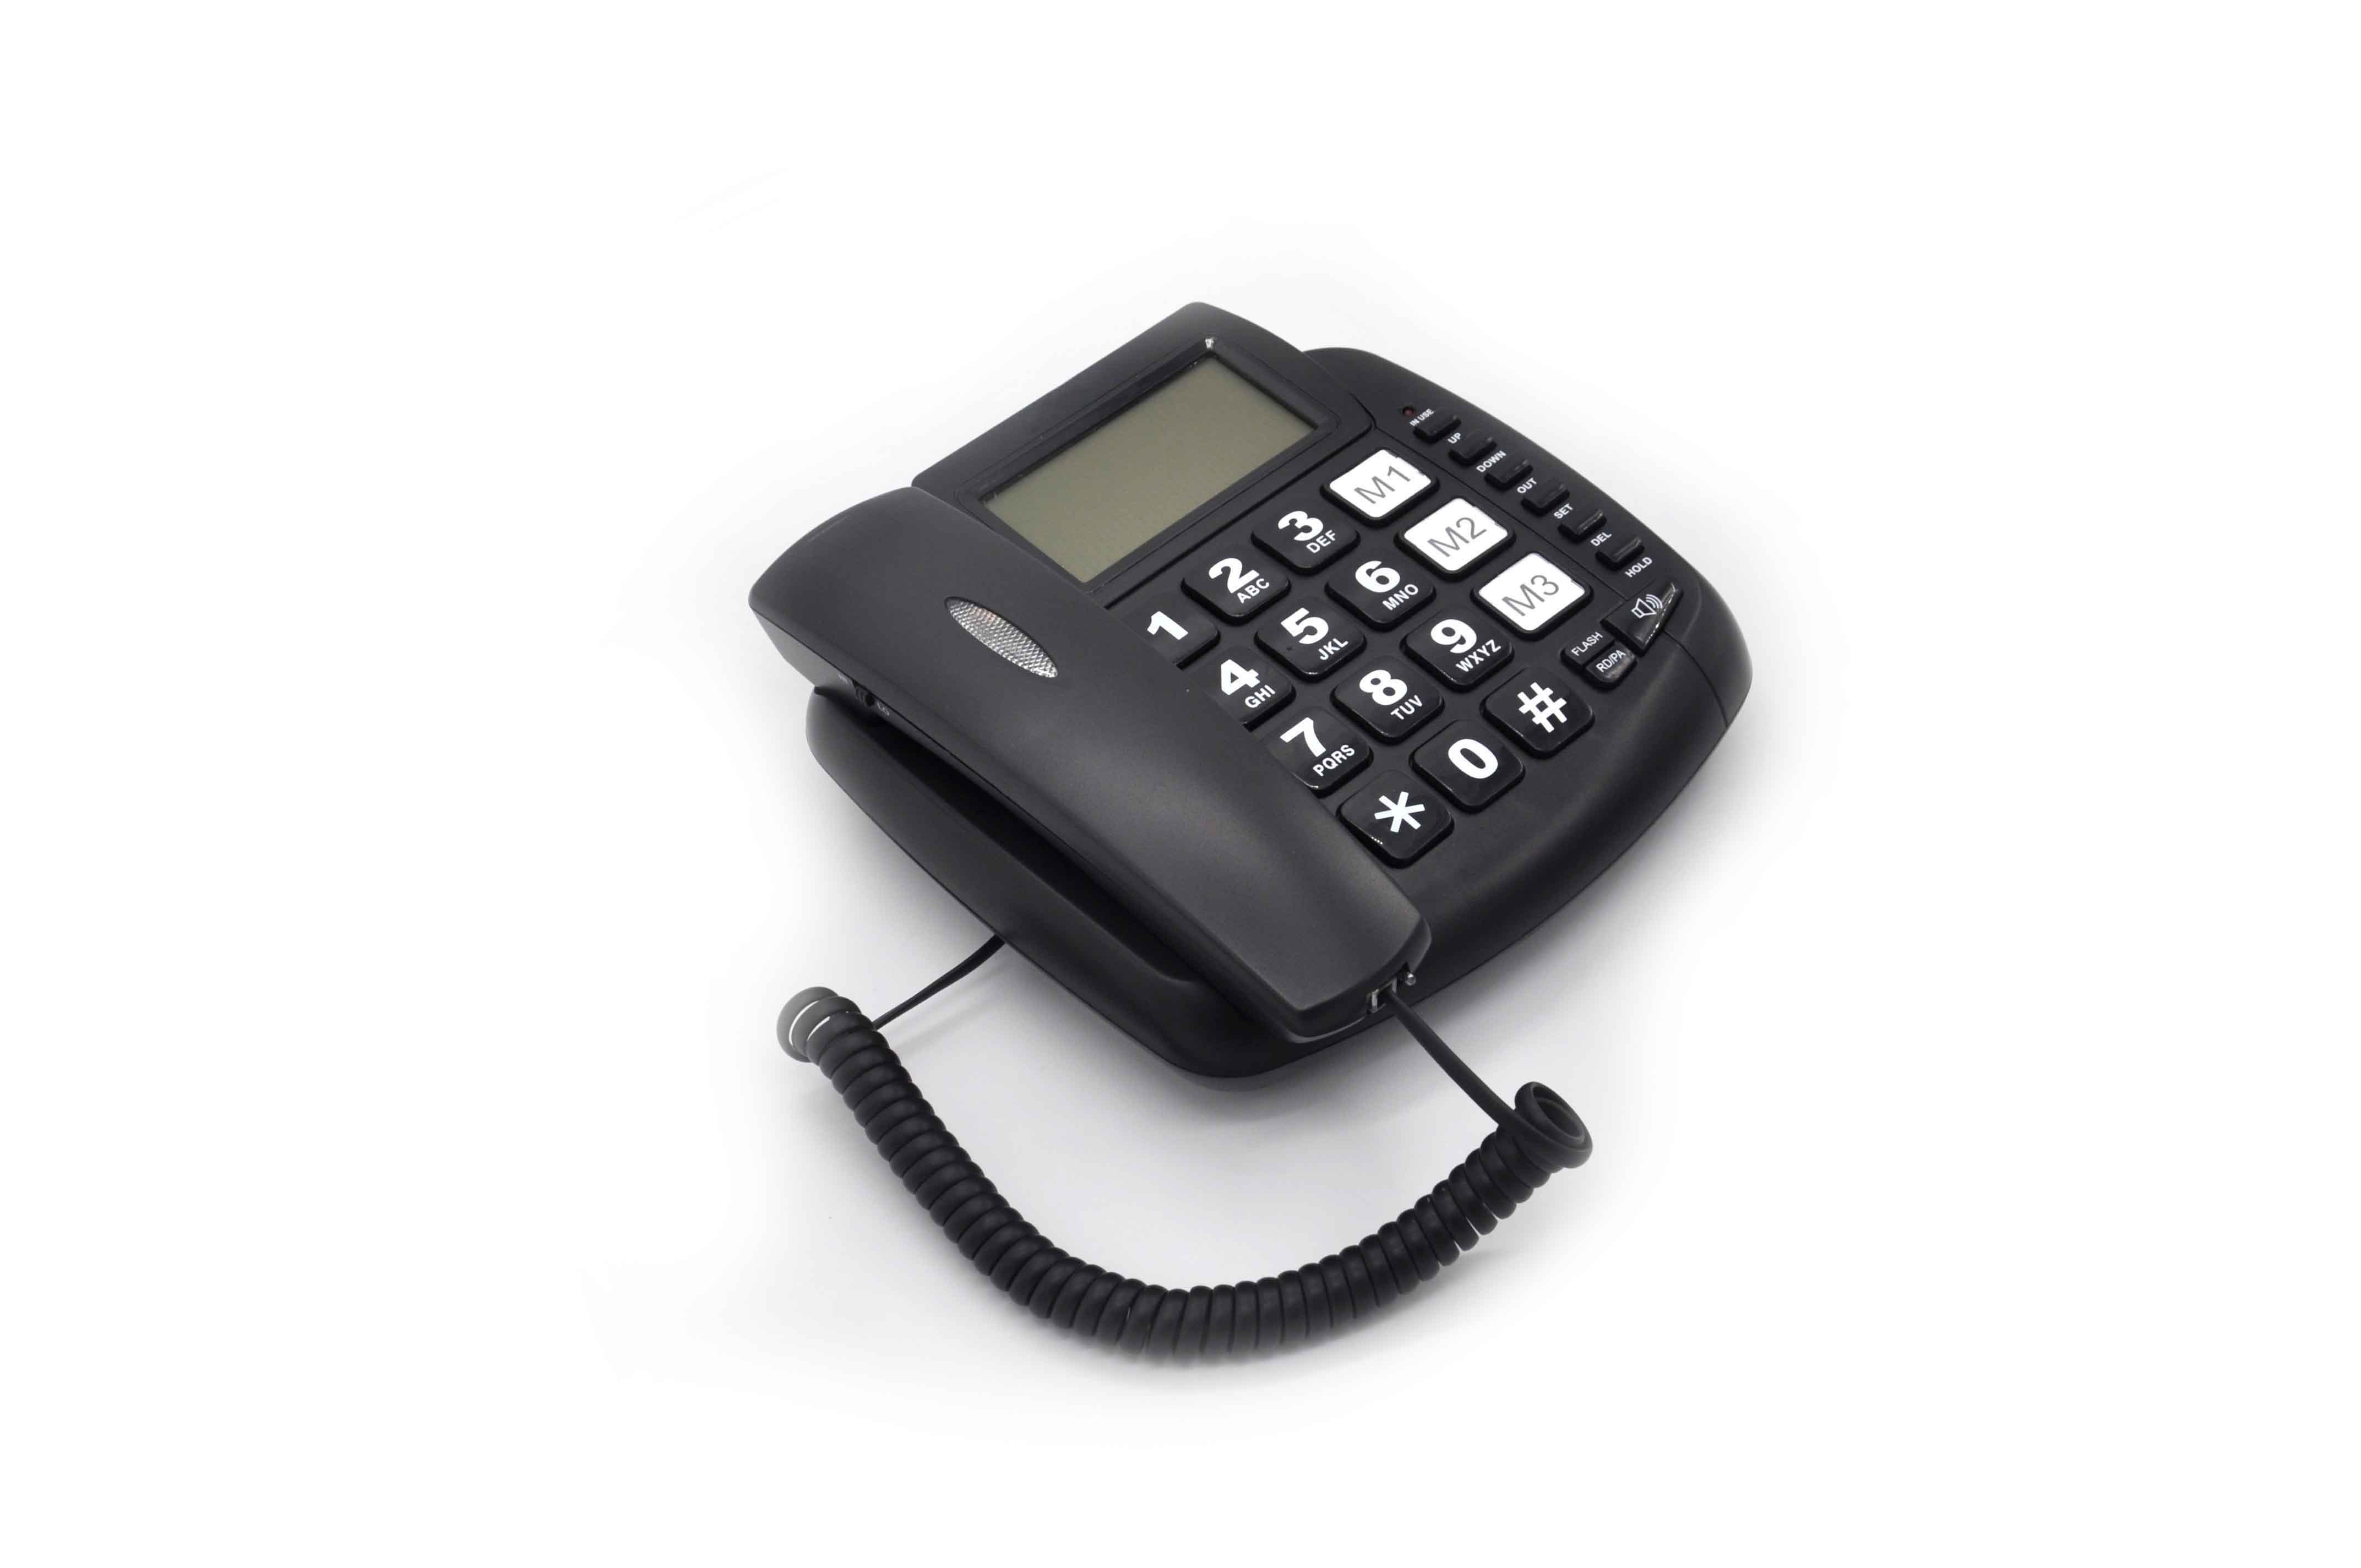 Commercio all'ingrosso prodotti Cina modello antico telefono, grande pulsante con ID chiamante